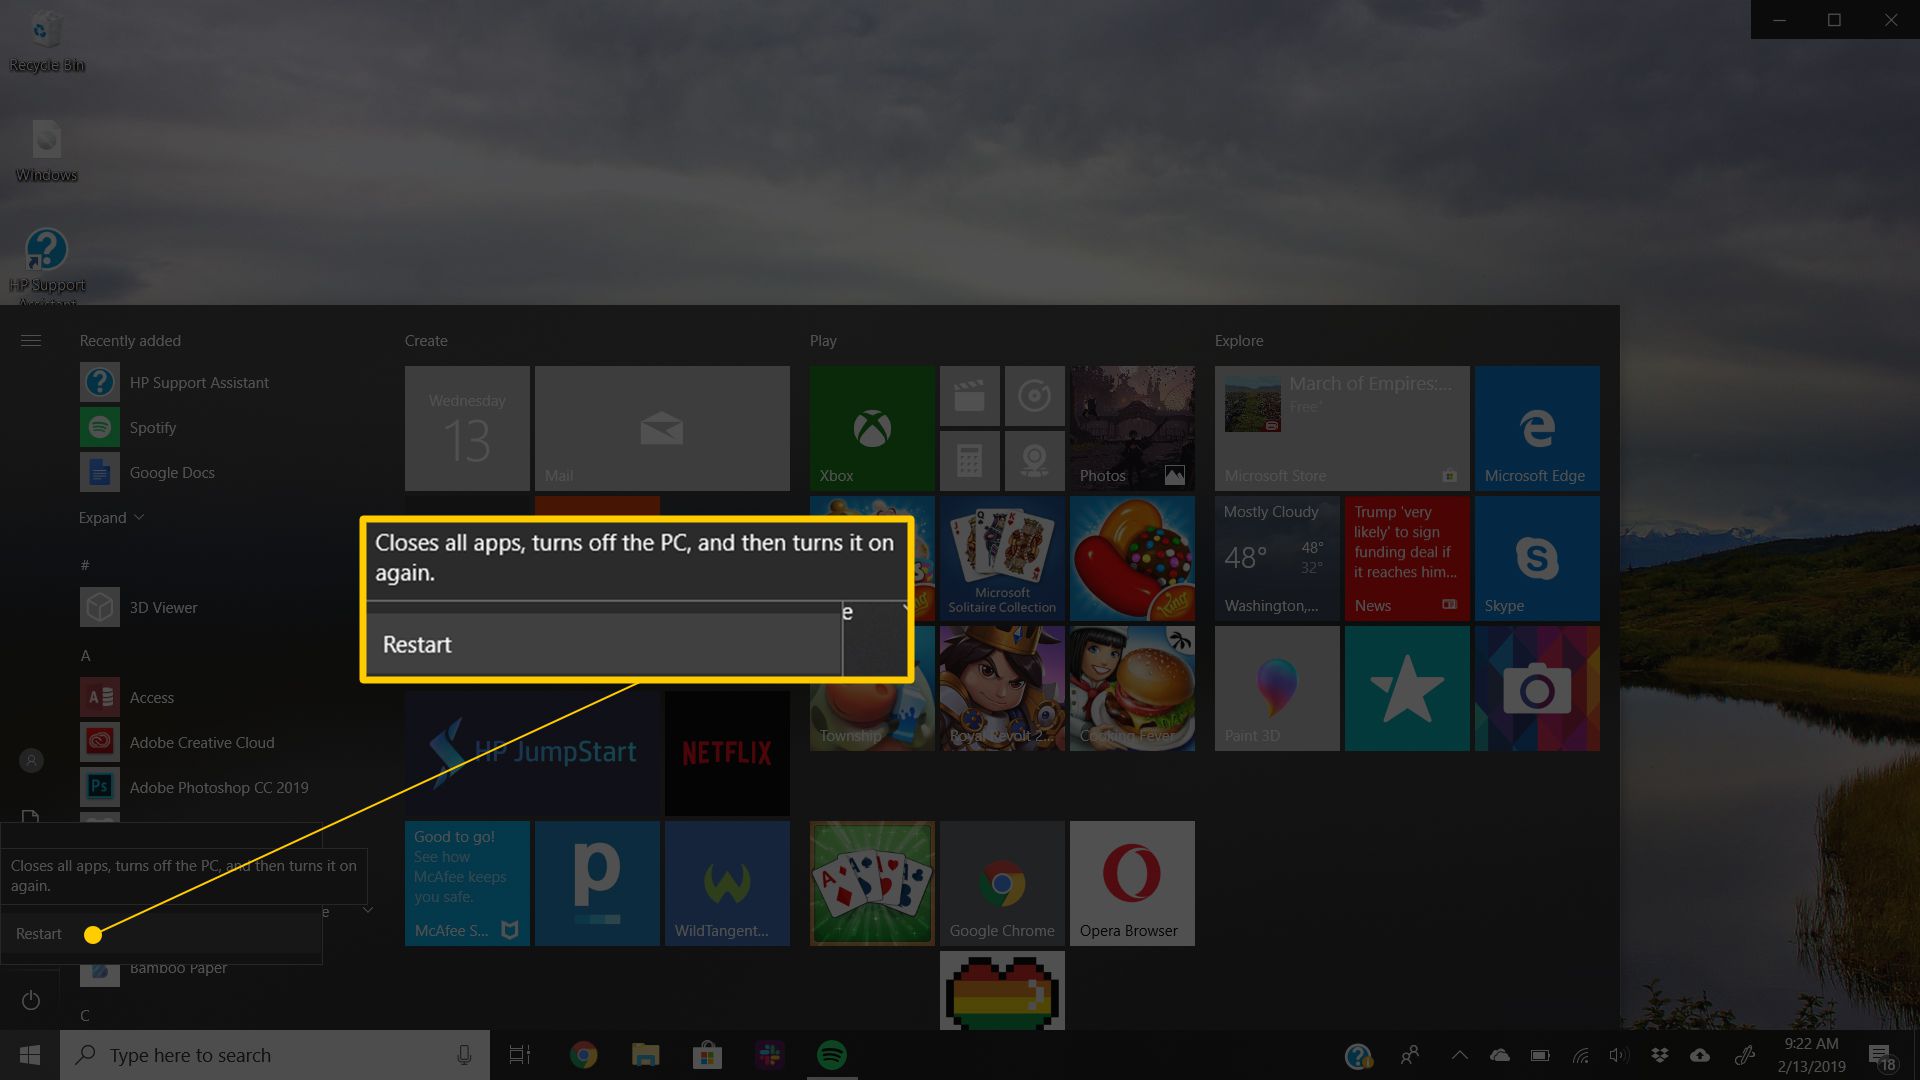 Restartujte nabídku ve Windows 10